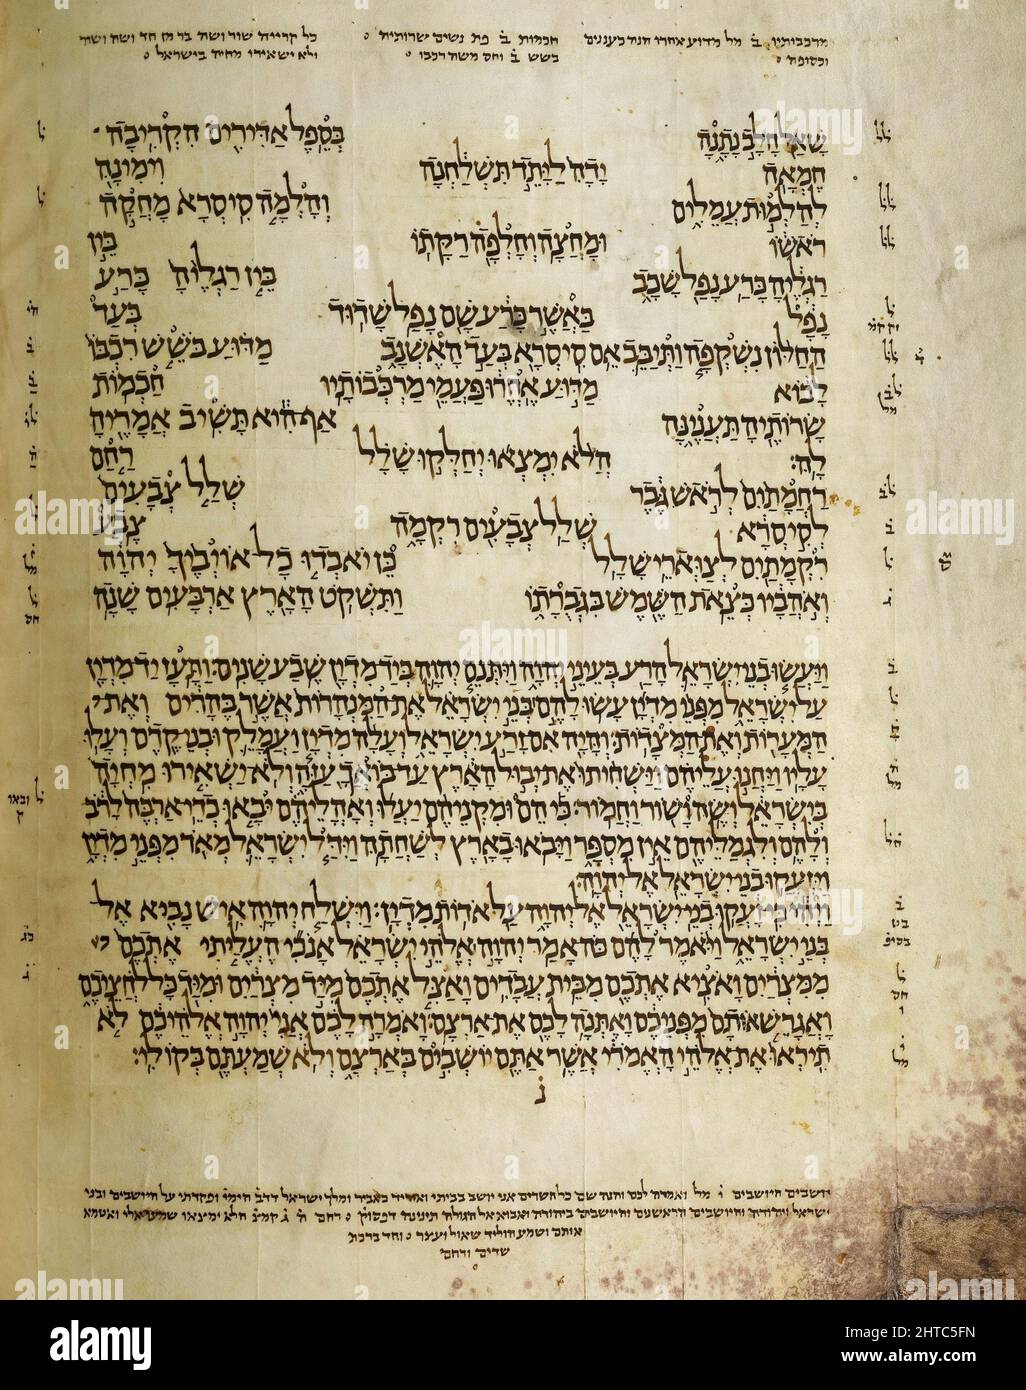 Une page du Codex d'Alep. Le Codex d'Alep (couronne d'Alep) est un manuscrit médiéval lié de la Bible hébraïque. Le codex a été écrit dans la ville de Tiberias au 10th ème siècle (vers 920) sous le règne du califat abbasside, et a été approuvé pour son exactitude par Maimonides. Avec le Codex de Leningrad, il contient la tradition masorétique de Ben-Asher. Le codex a été conservé pendant cinq siècles dans la Synagogue centrale d'Alep, jusqu'à ce que la synagogue soit incendiée pendant les émeutes anti-juives de 1947. Le sort du codex au cours de la décennie suivante n'est pas clair: Quand il a refait surface en Israël Banque D'Images